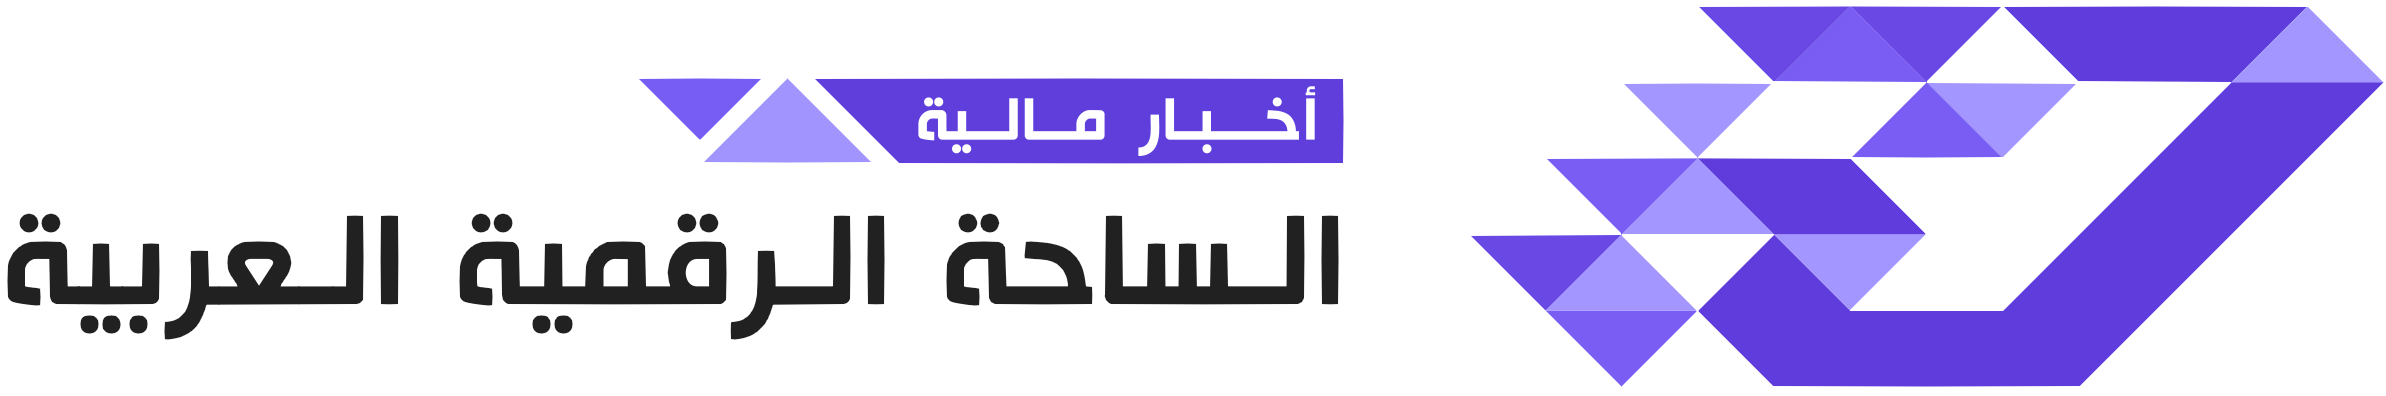 الساحة الرقمية العربية | Digital Aarena